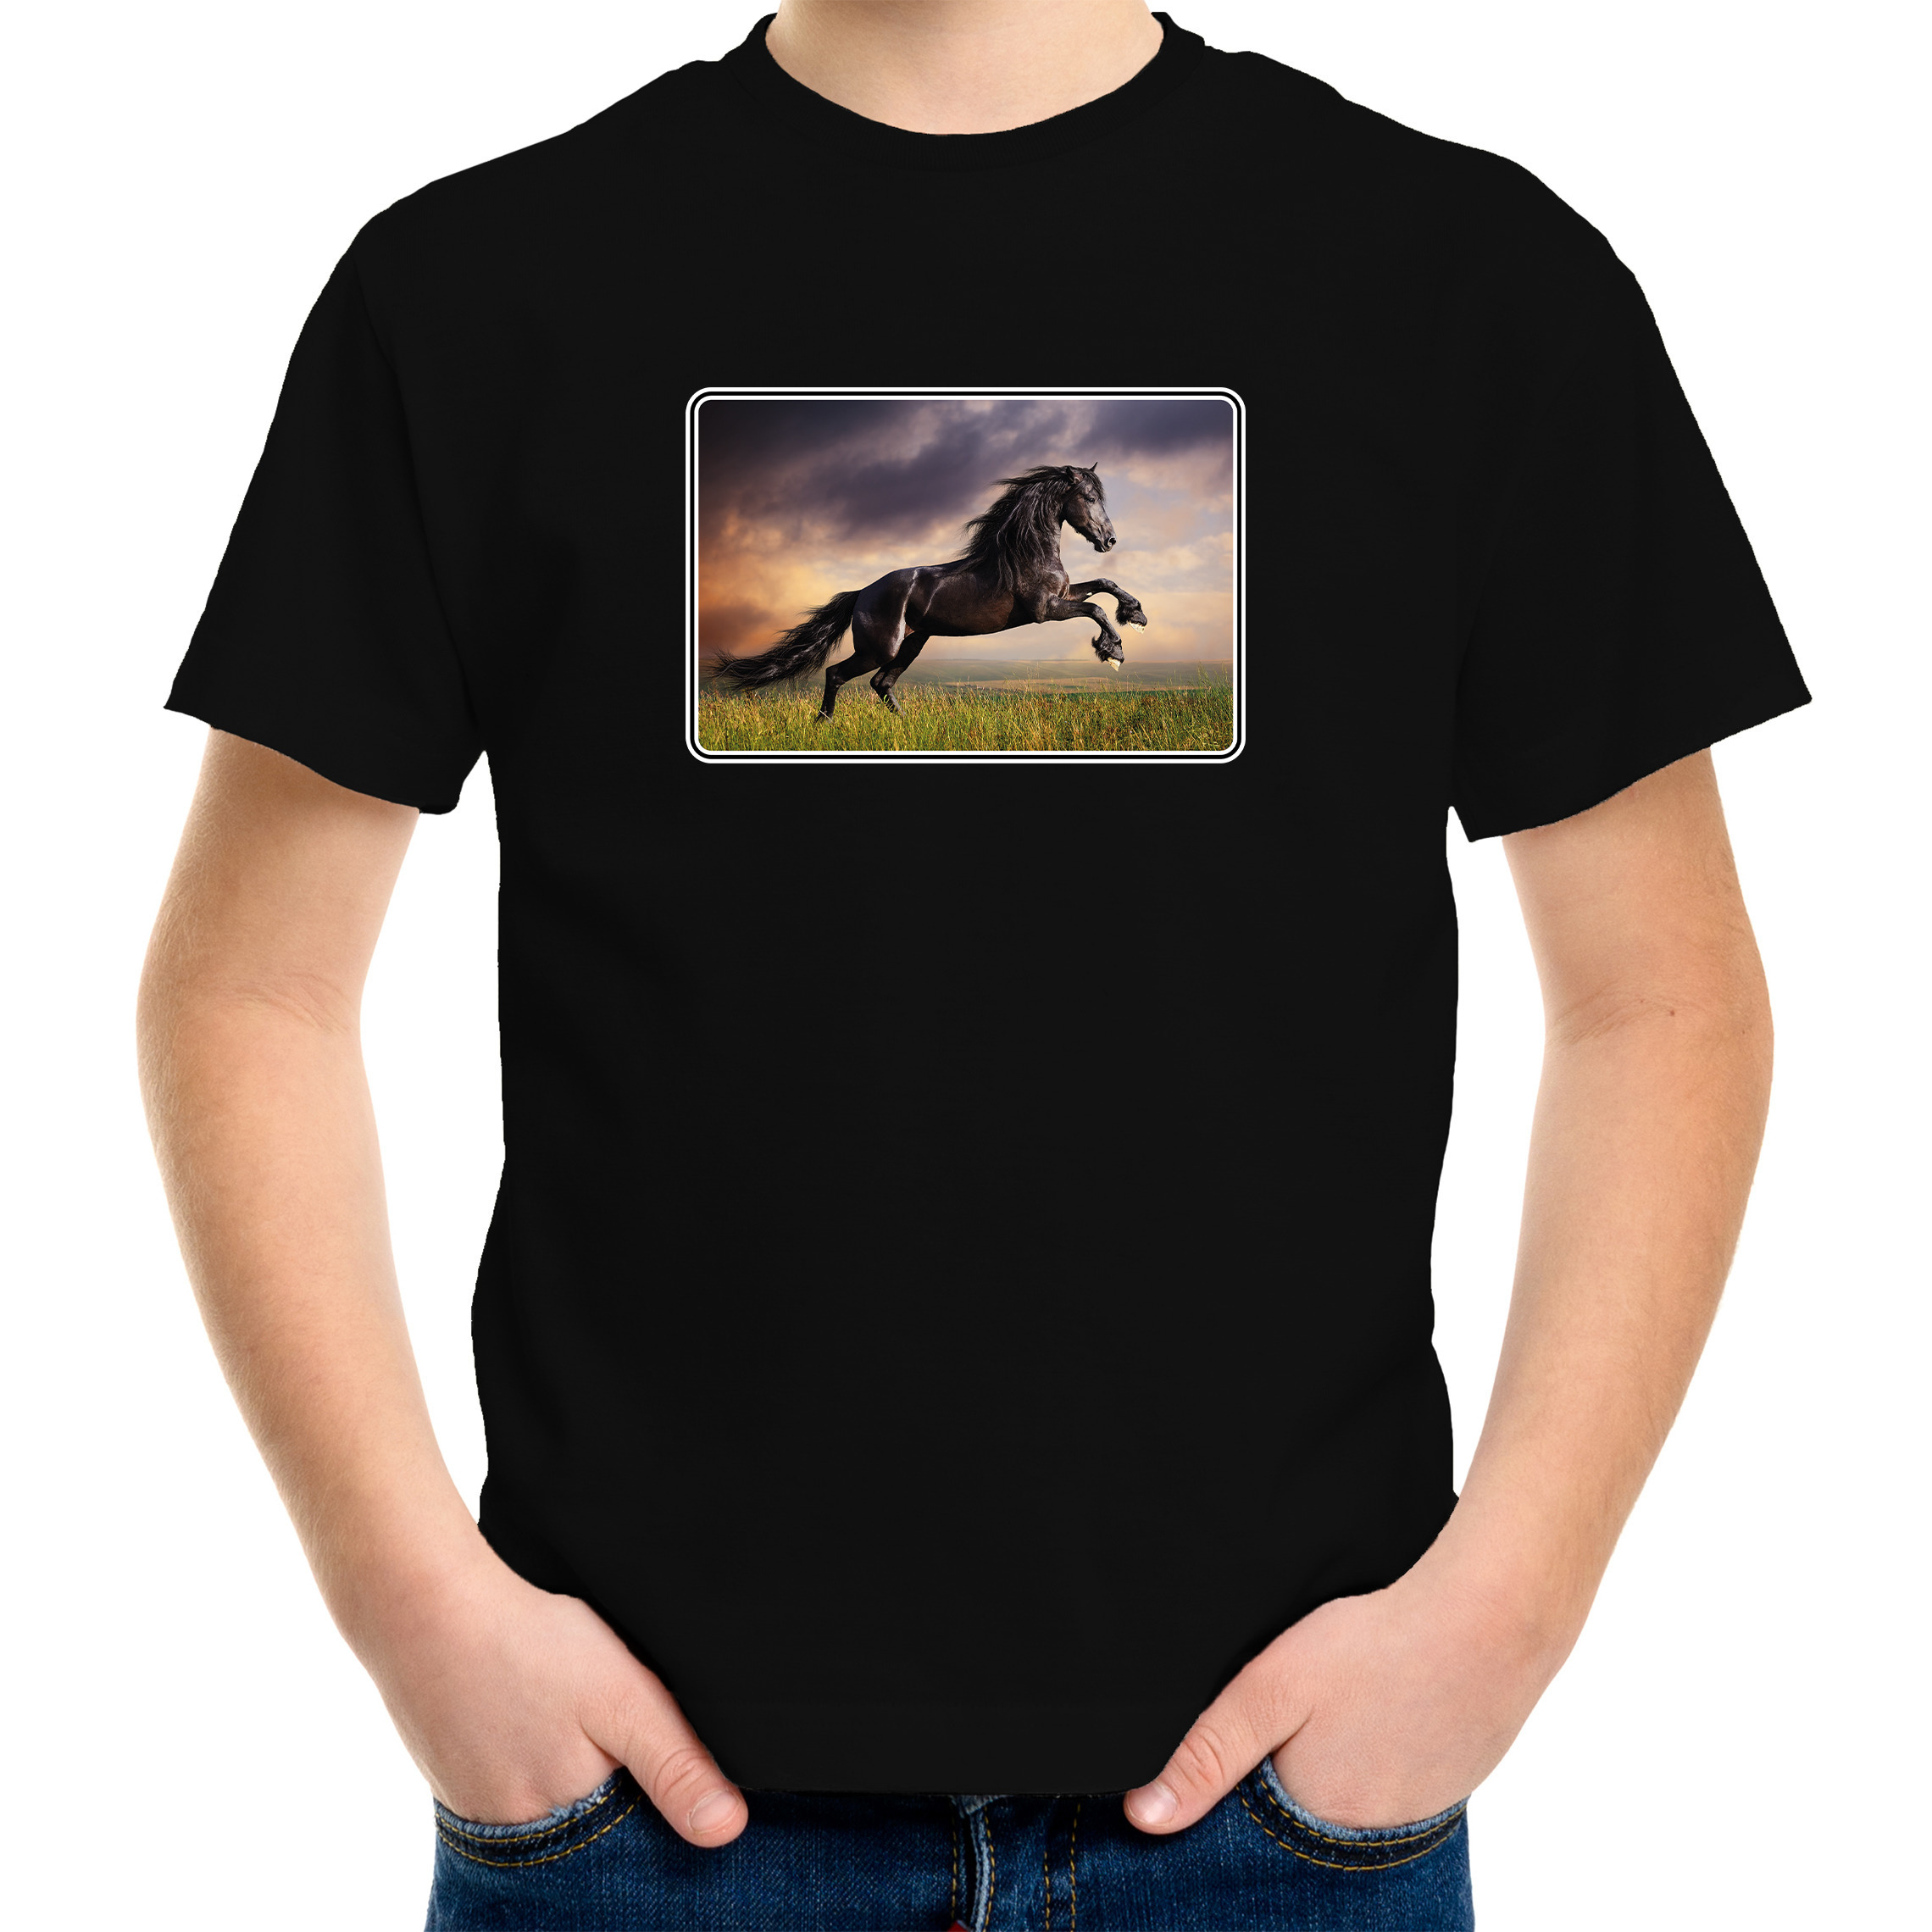 Dieren t-shirt met paarden foto zwart voor kinderen paard cadeau shirt